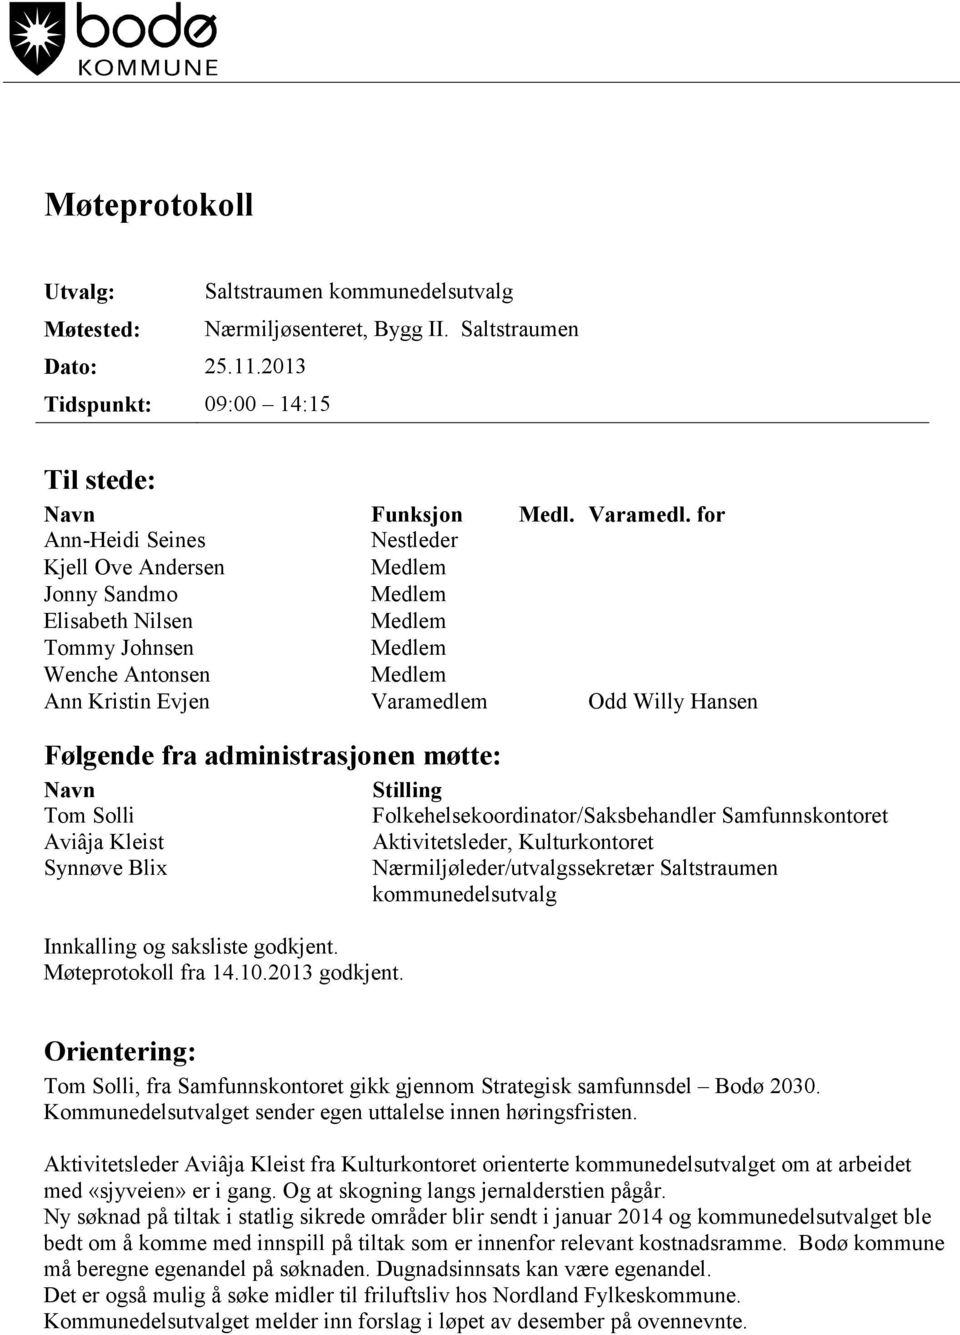 Tom Solli Aviâja Kleist Synnøve Blix Innkalling og saksliste godkjent. Møteprotokoll fra 14.10.2013 godkjent.